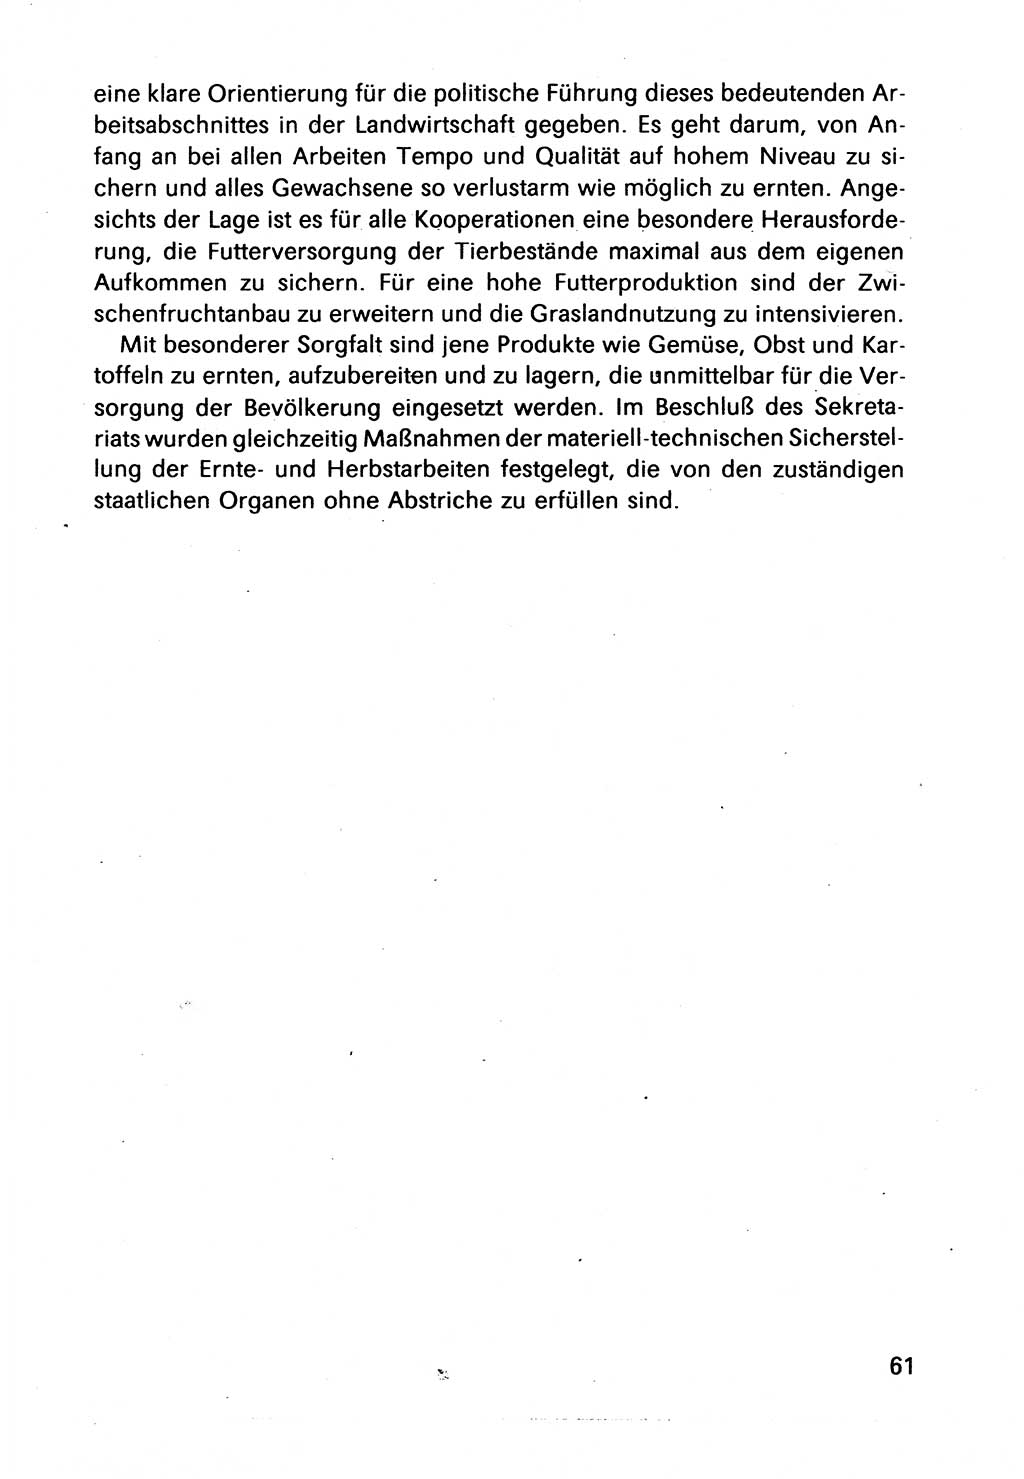 Bericht des Politbüros (PB) an das Zentralkomitee (ZK) der SED (Sozialistische Einheitspartei Deutschlands) [Deutsche Demokratische Republik (DDR)], 8. Tagung des Zentralkomitees des ZK der SED 1989, Seite 61 (Ber. PB ZK SED 8. Tg. DDR 1989, S. 61)